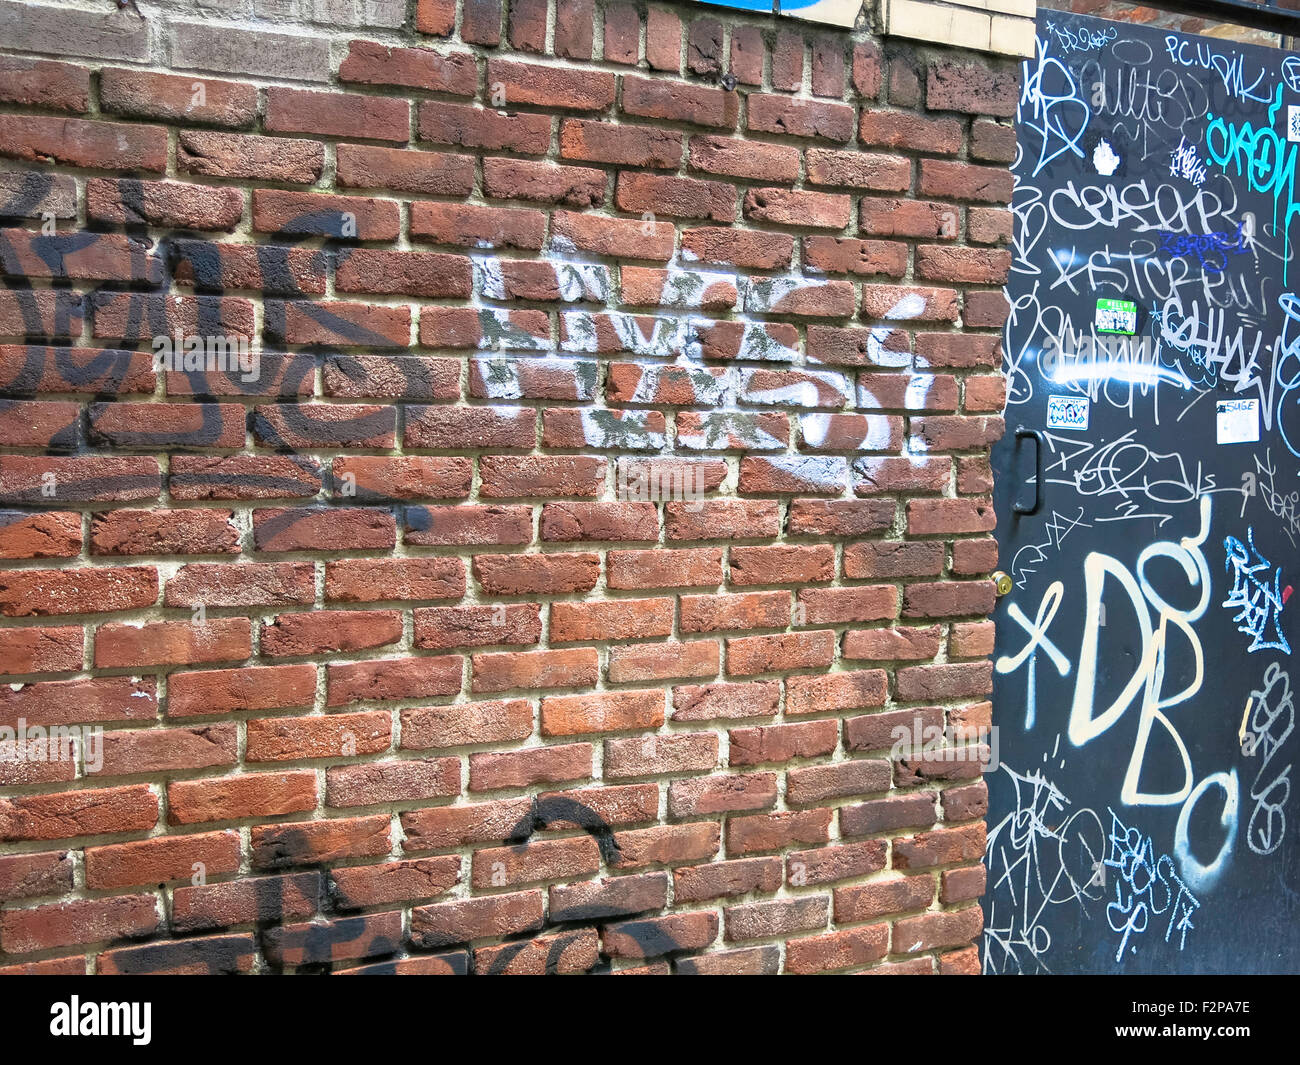 Graffiti, NYC Stock Photo